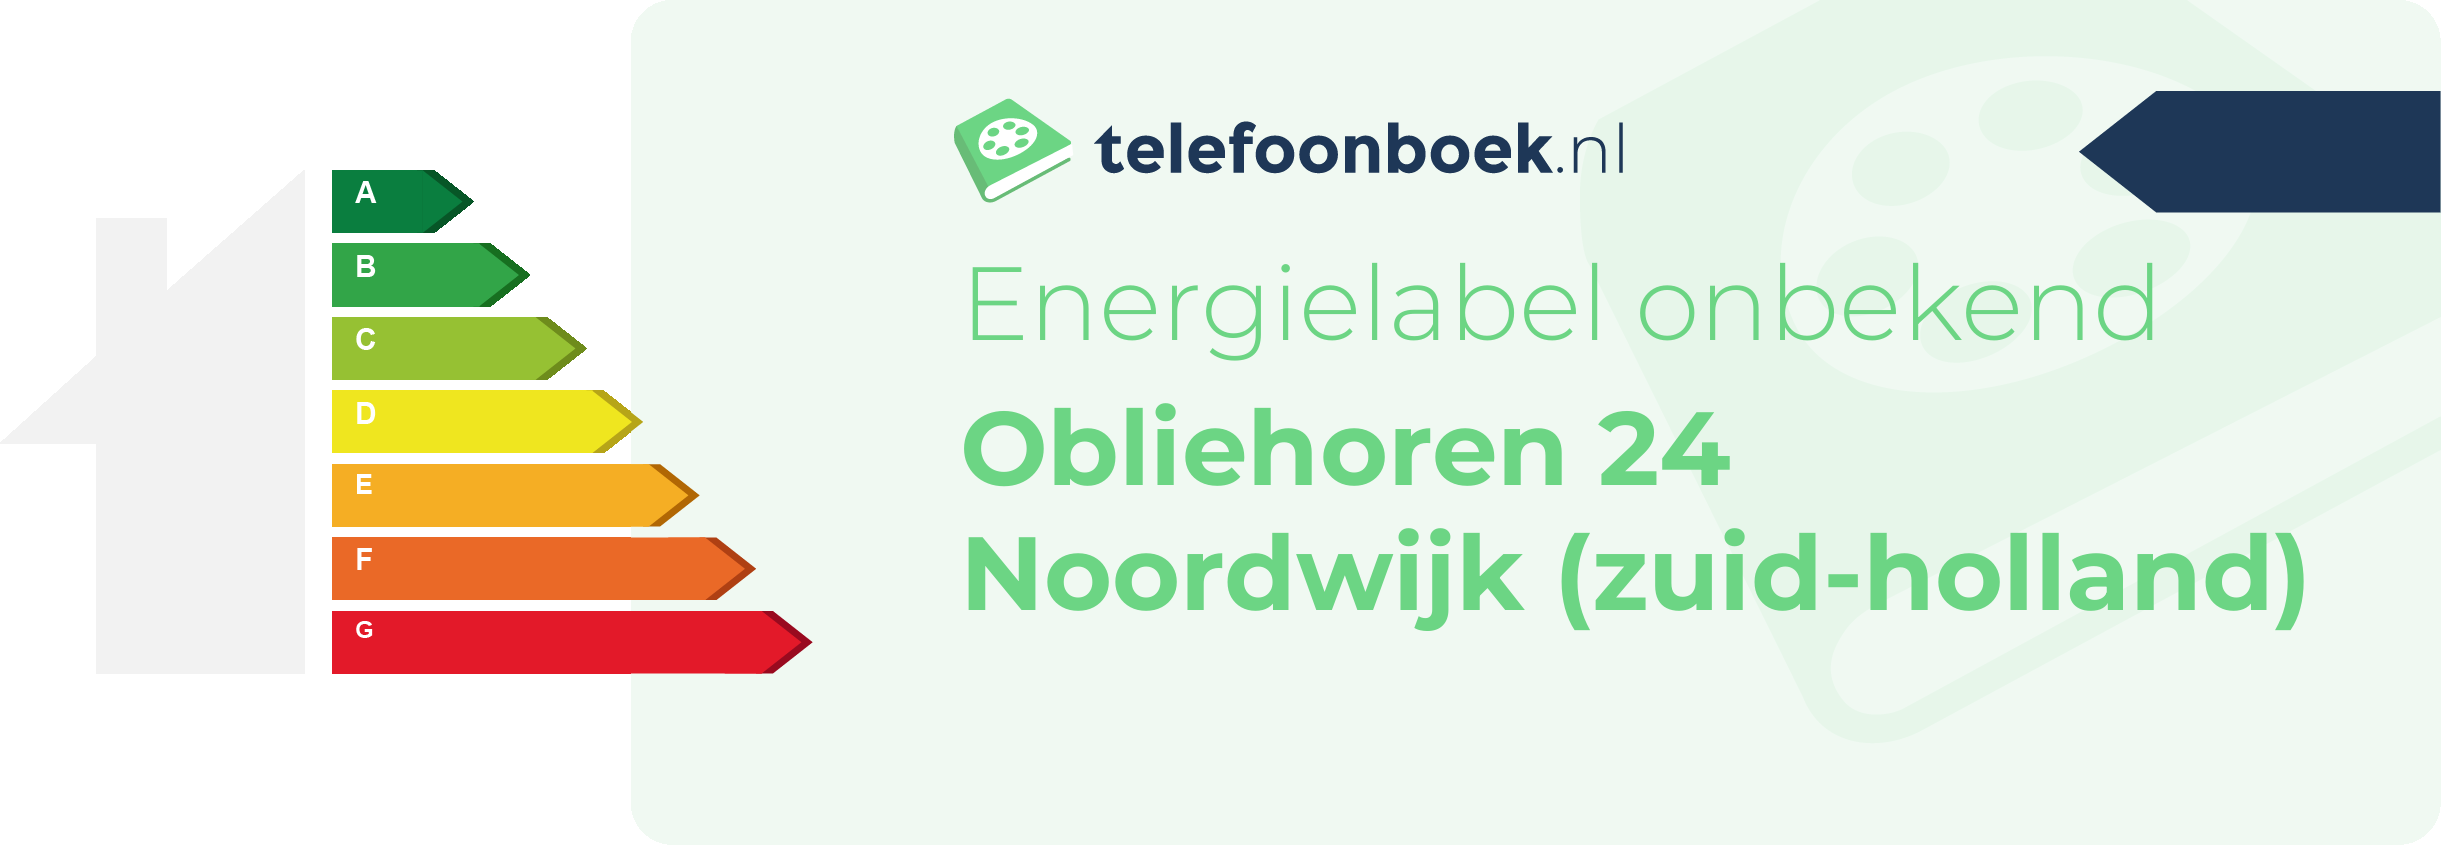 Energielabel Obliehoren 24 Noordwijk (Zuid-Holland)